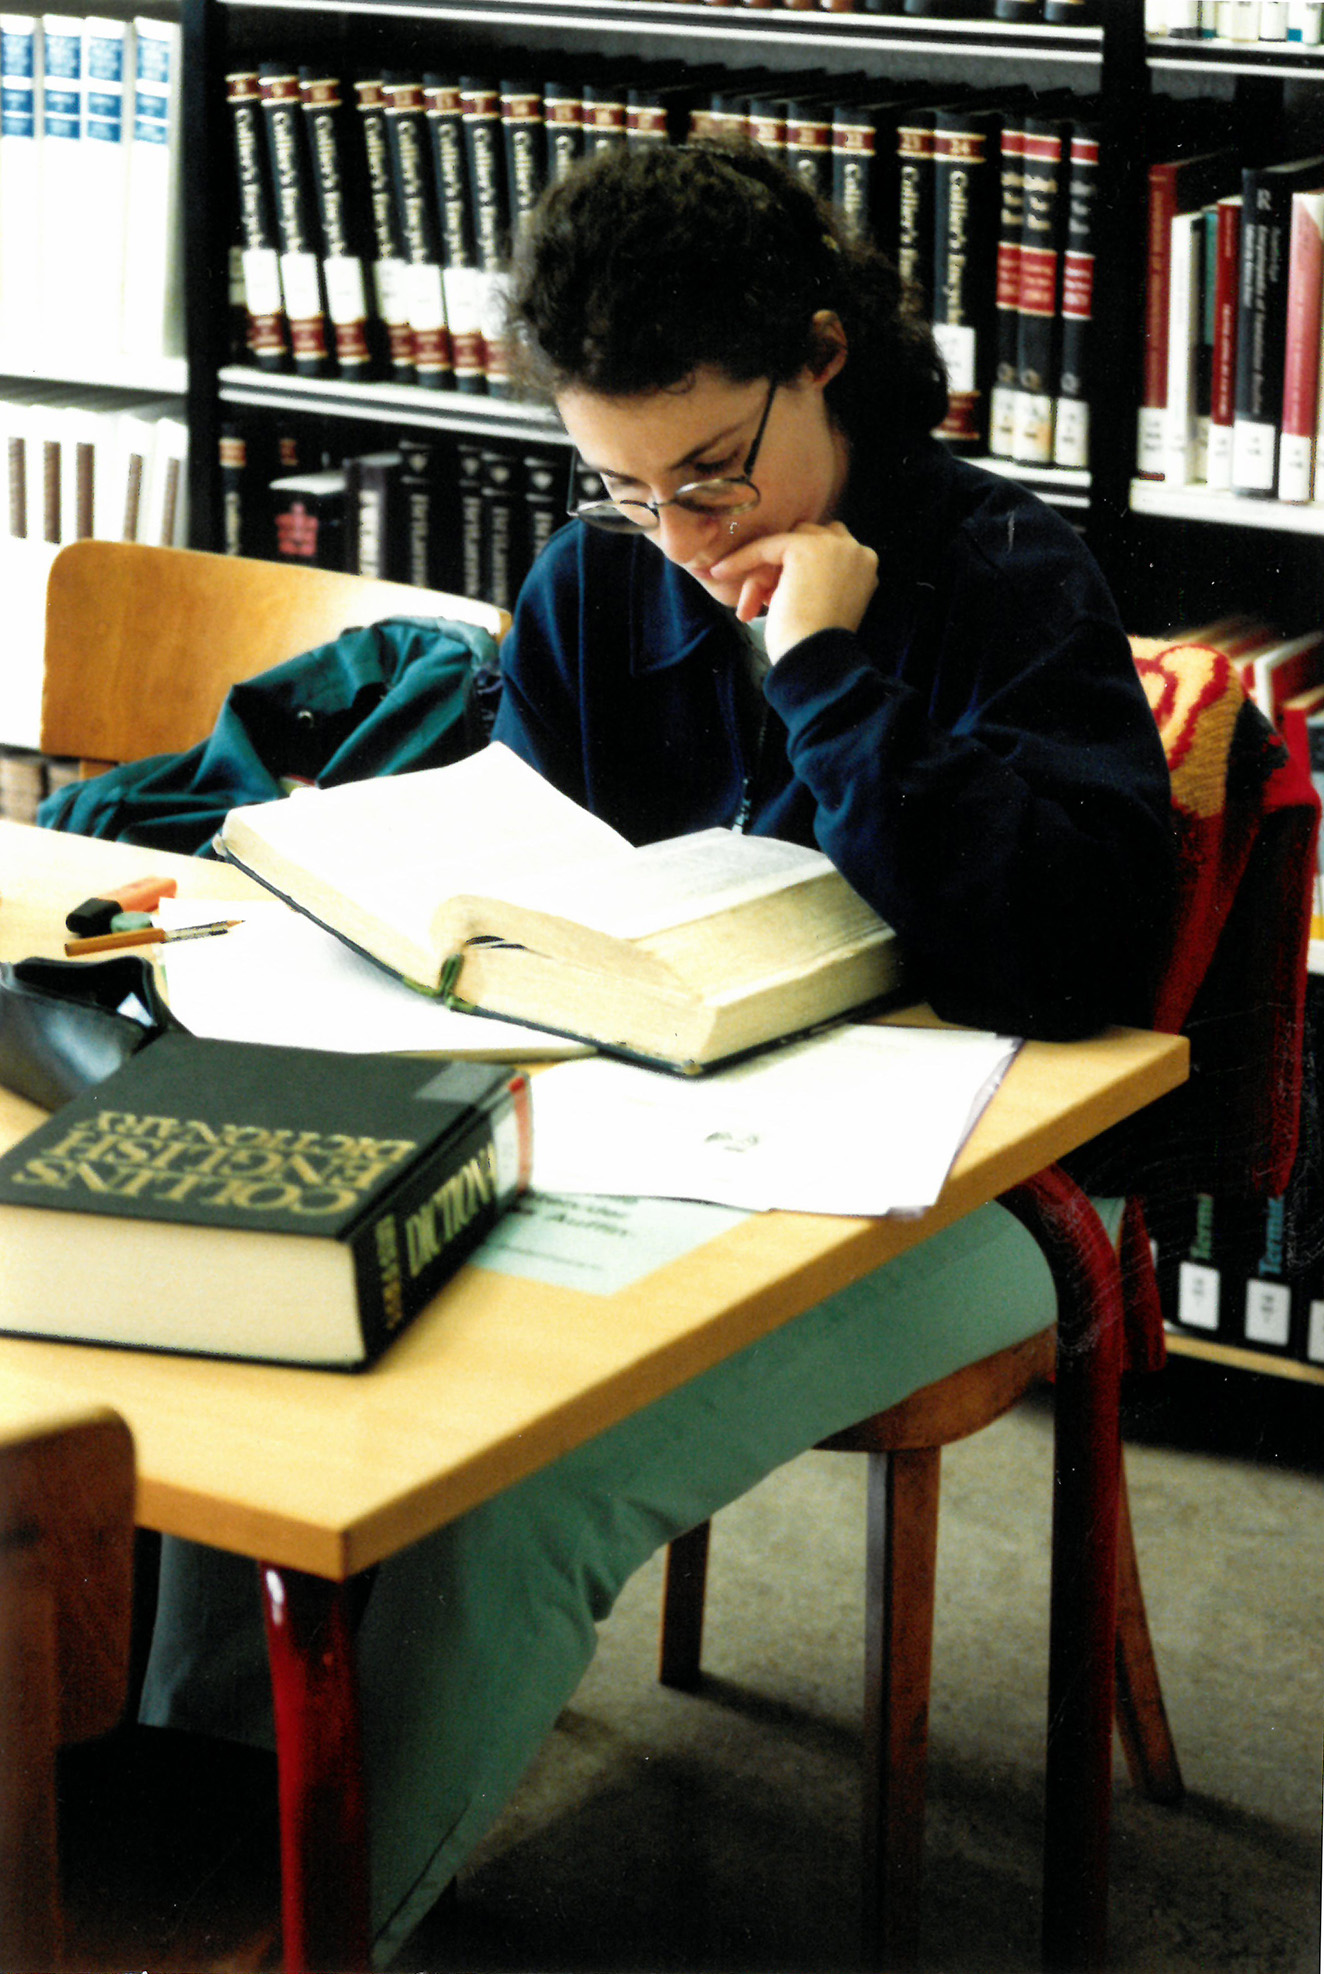 Studentin in der Bibliothek am Lernen